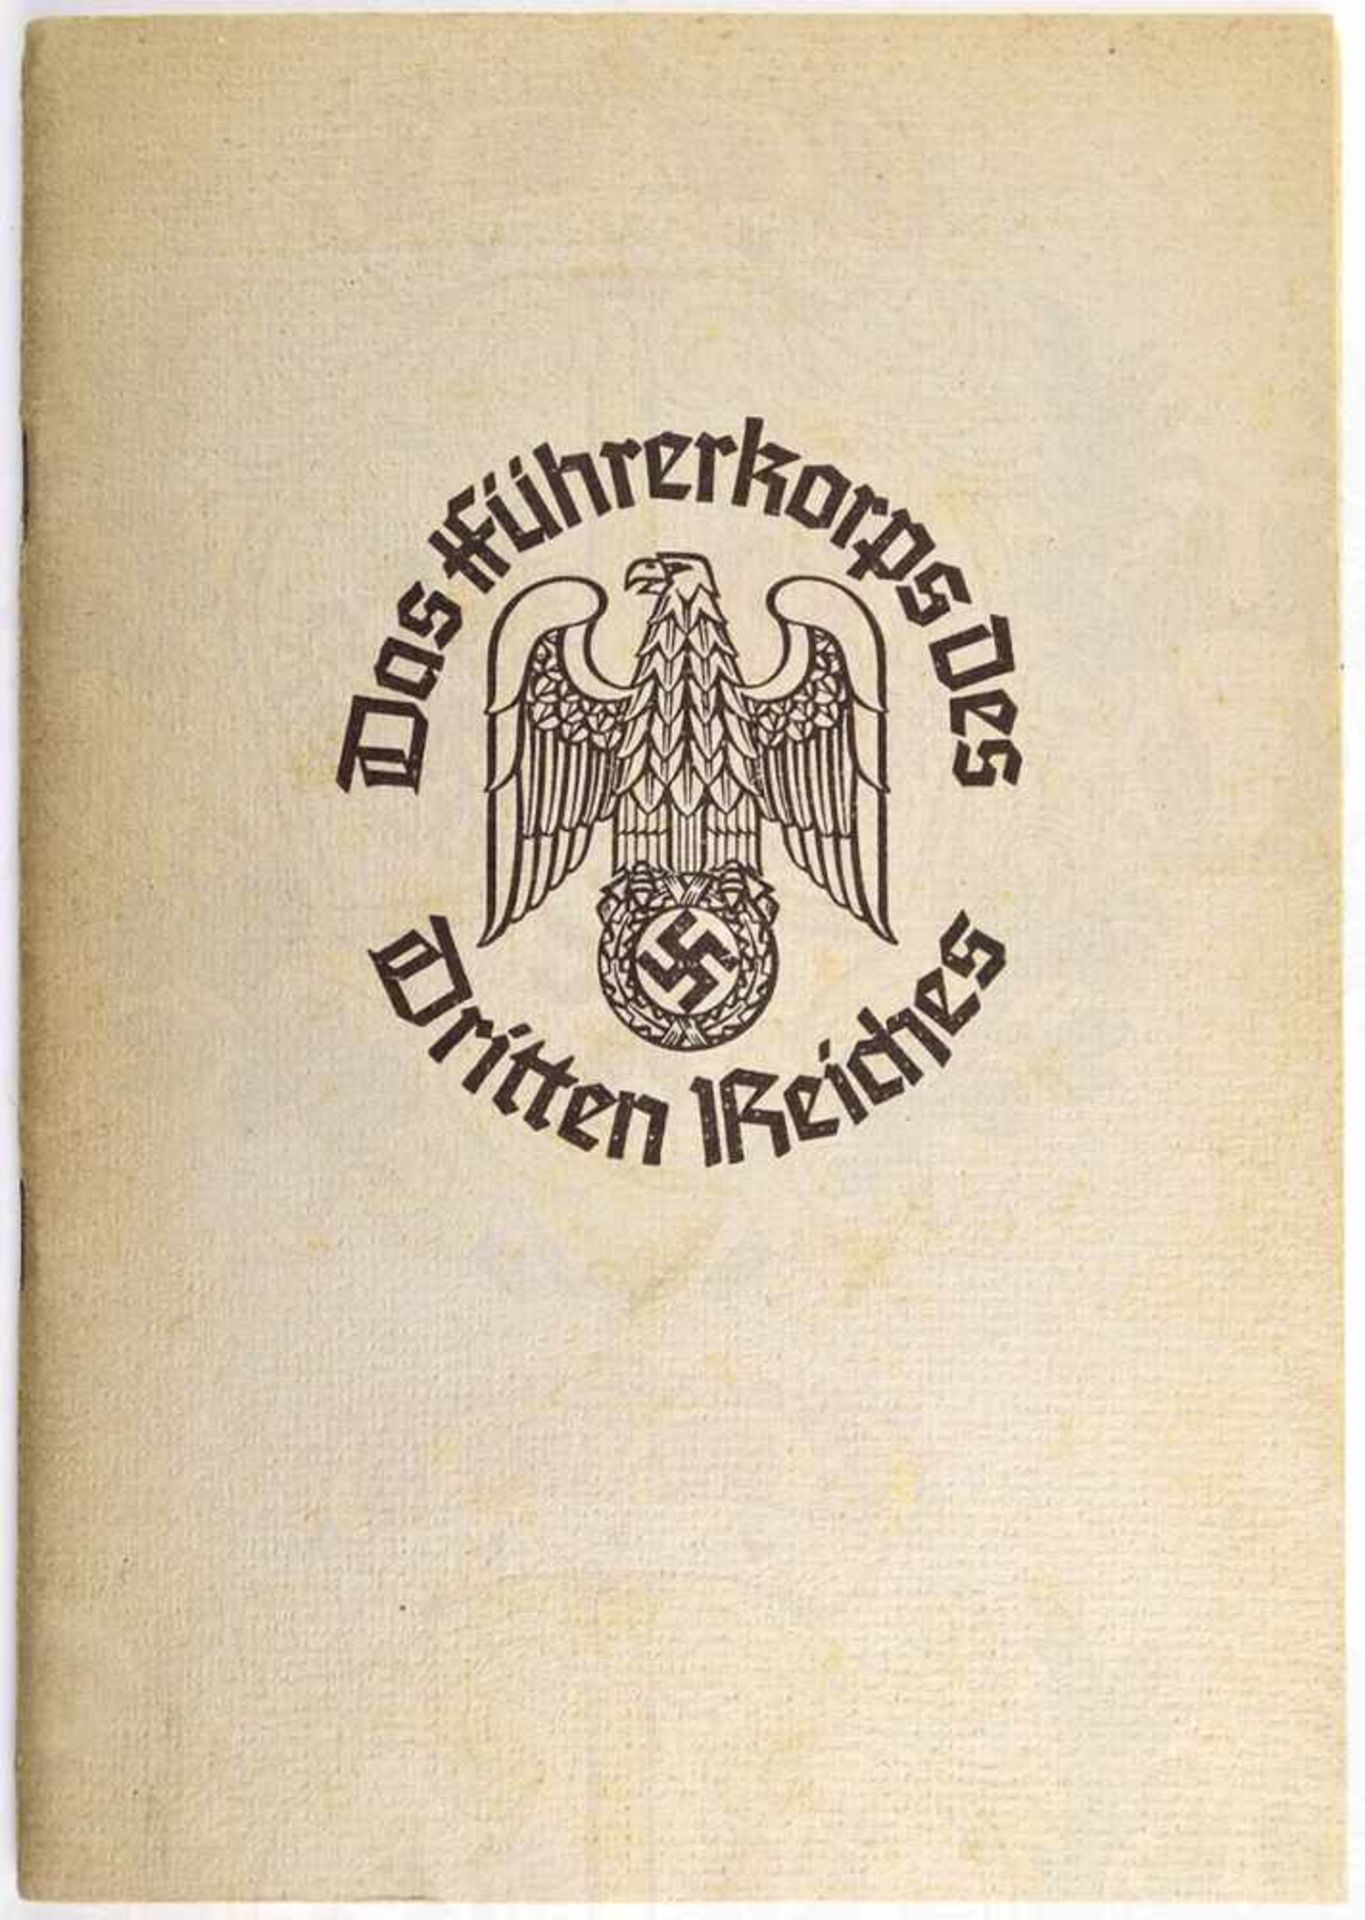 DAS FÜHRERKORPS DES 3. REICHES, Niedersächsische Tageszeitung 1937, kpl. m. 64 Bildern u. 2 größeren